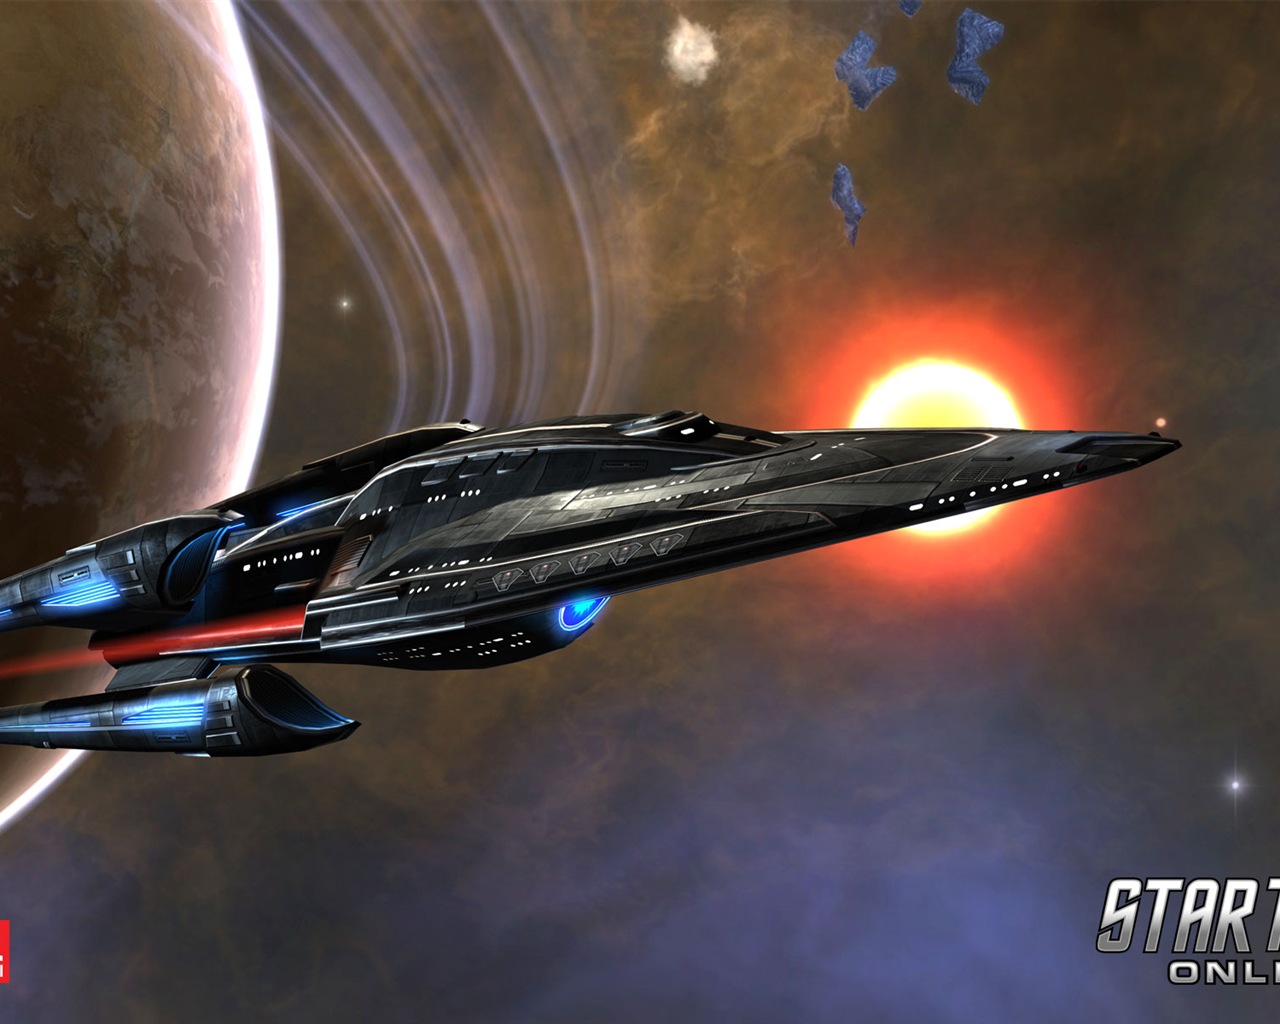 Star Trek Online 星际迷航在线 游戏高清壁纸16 - 1280x1024